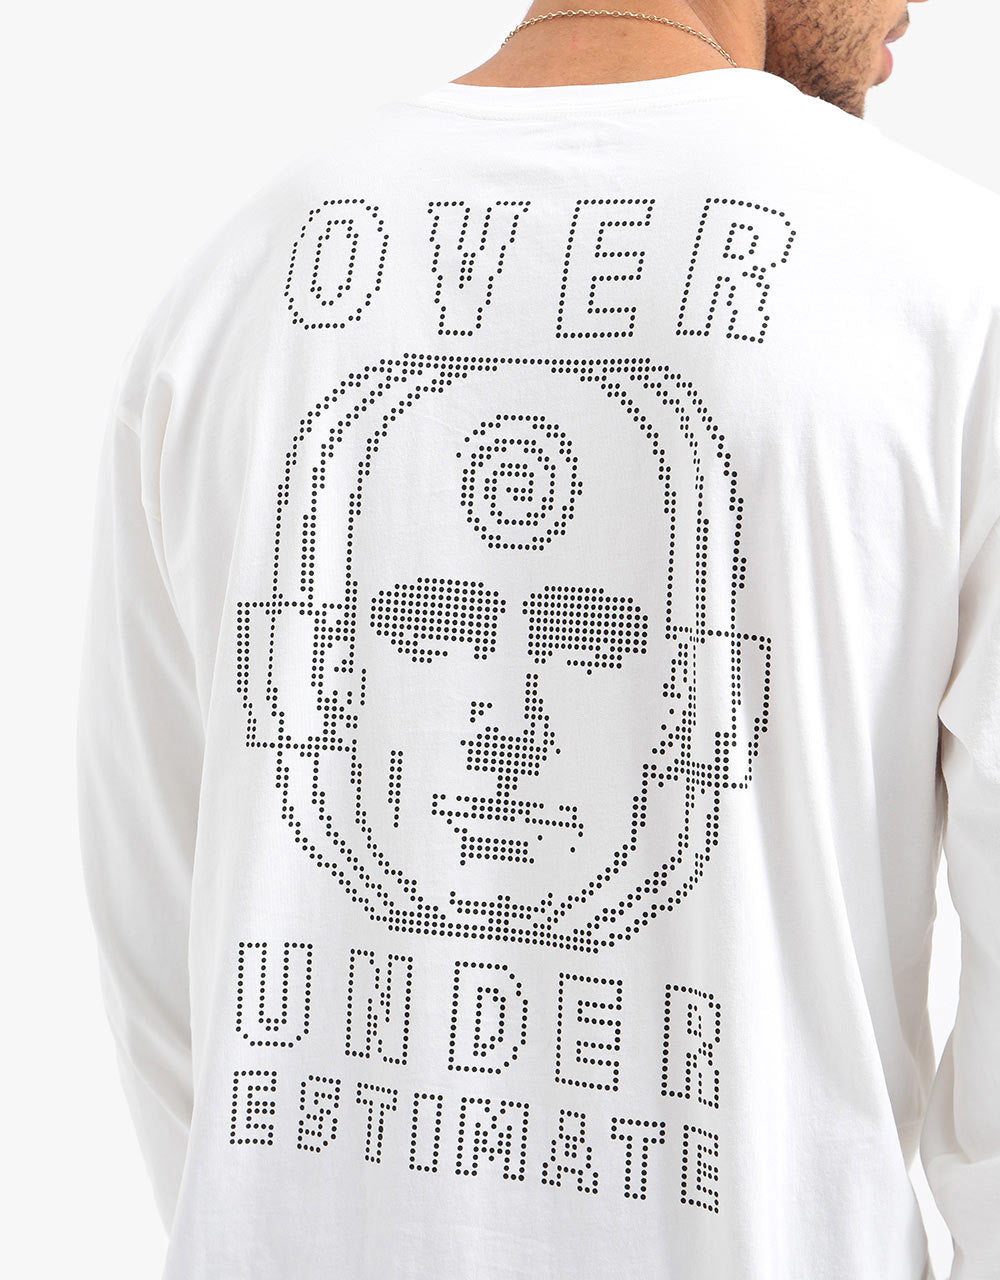 Madness Over Under L/S T-Shirt - Bone White